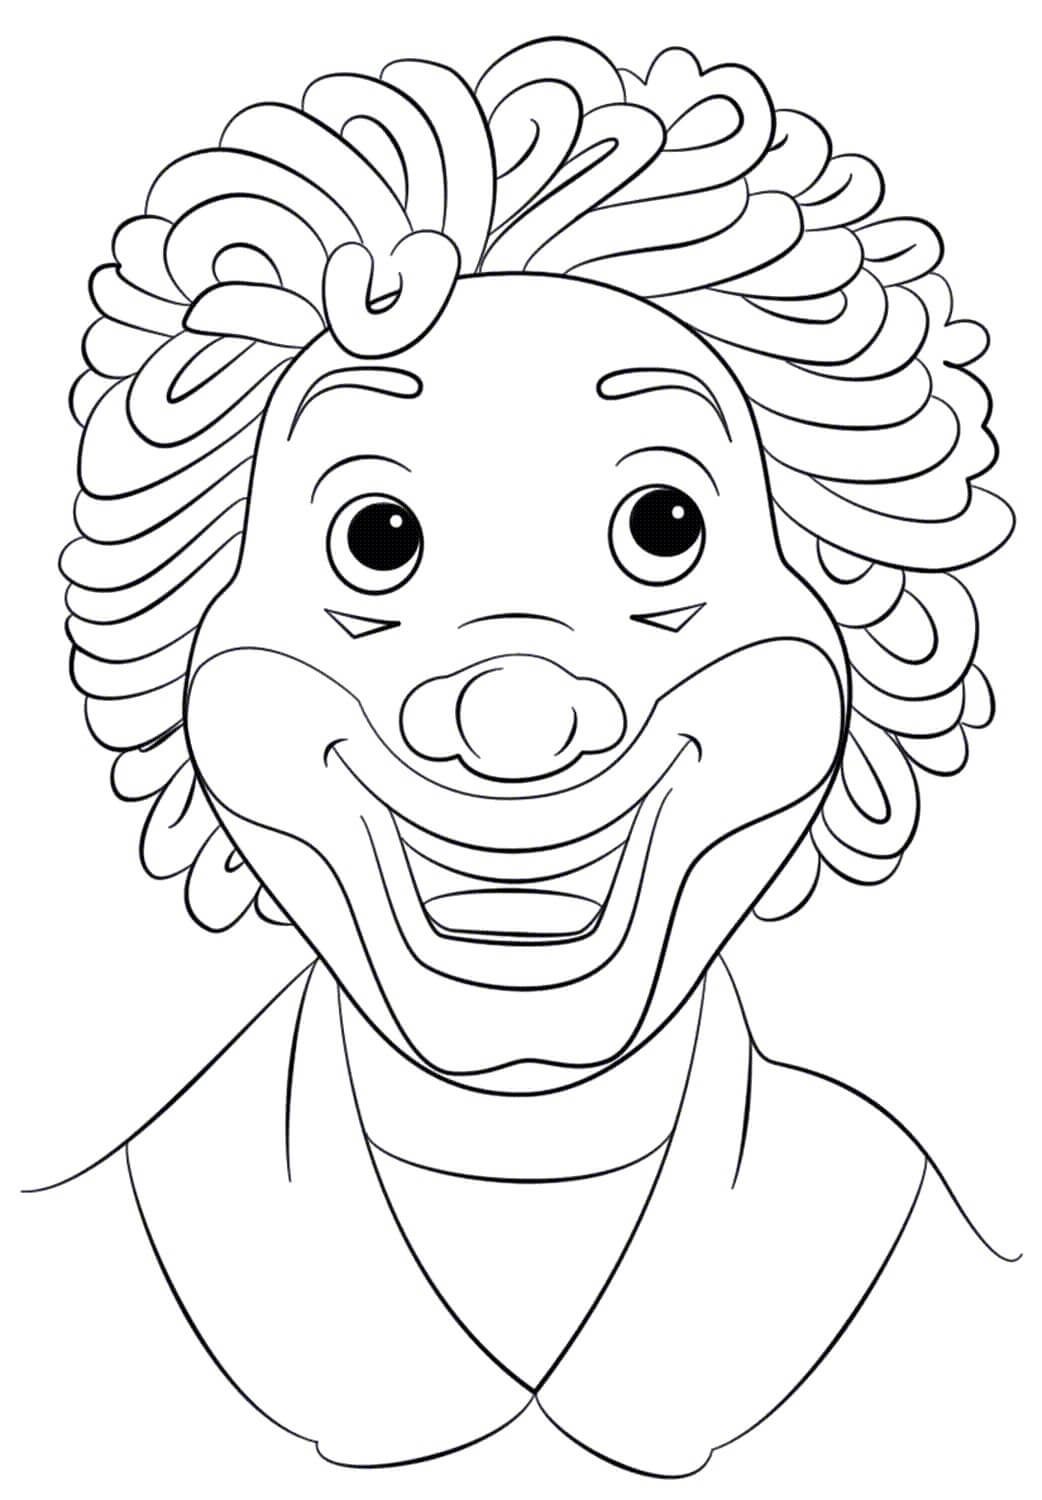 Desenhos de Rosto de Boneco Palhaço de Ronald McDonald para colorir